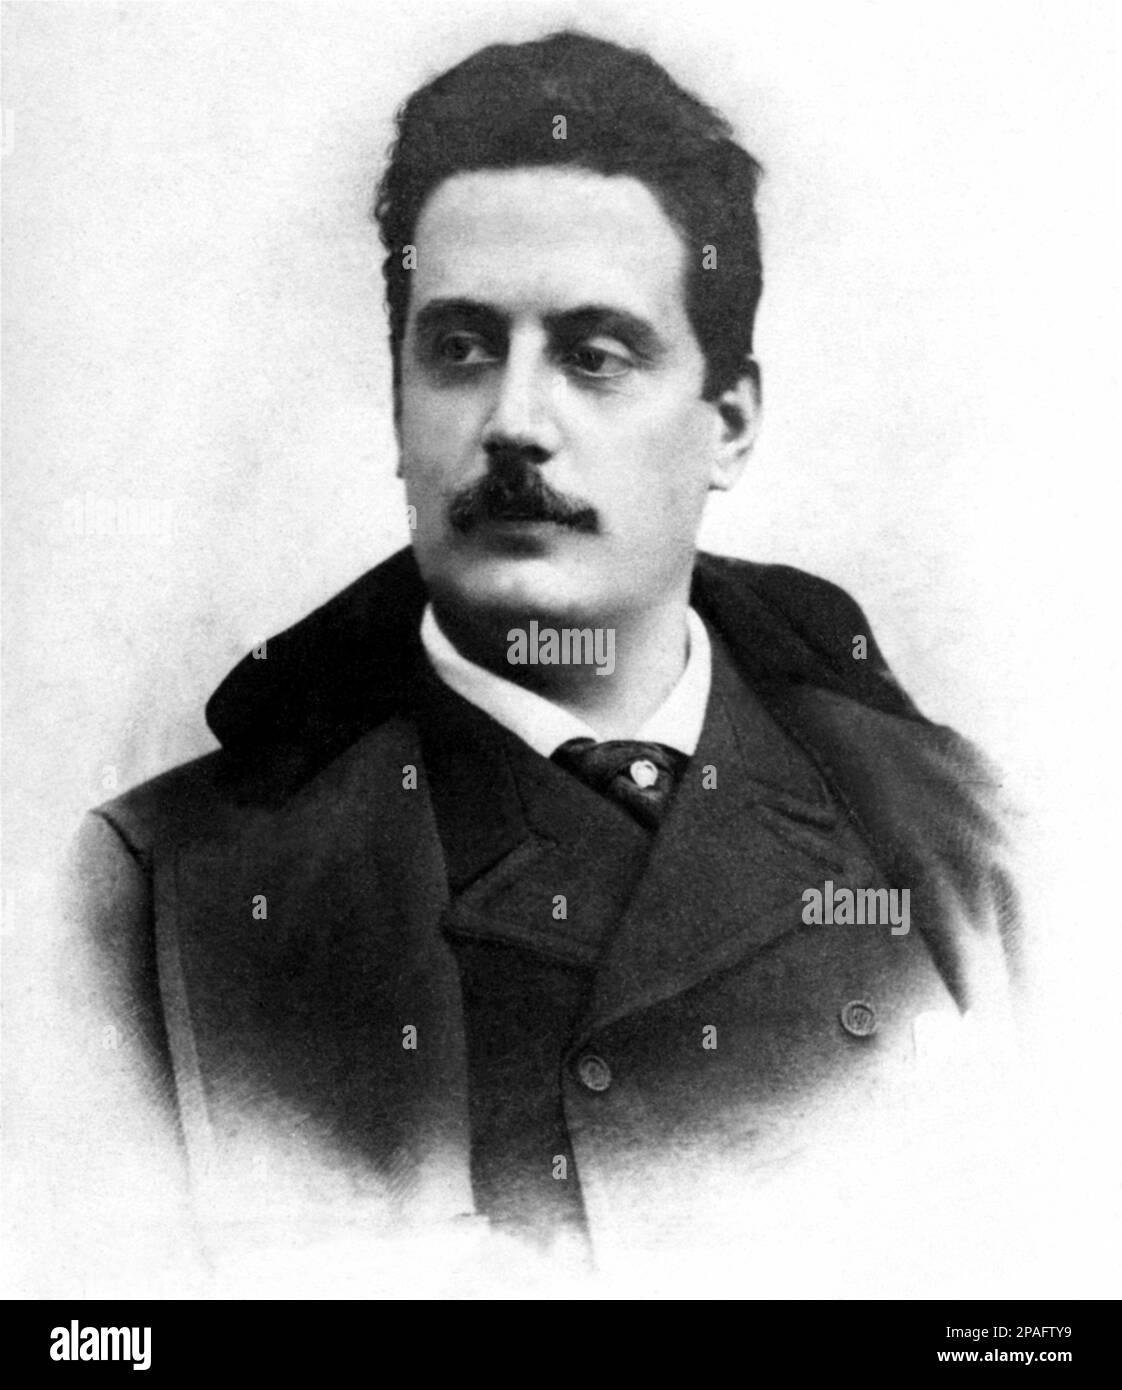 Il celebre compositore italiano GIACOMO PUCCINI 1858 - 1924 ) - OPERA LIRICA - COMPOSITORE - MUSICA - ritratto - ritratto - baffi - baffi - CLASSICA - CLASSICA - CLASSICA - COMPOSITORE Lirico - ritratto - ritratto - cappotto - cravatta - colletto - colletto - MUSICALE - MUSICA ---- ARCHIVIO GBB Foto Stock